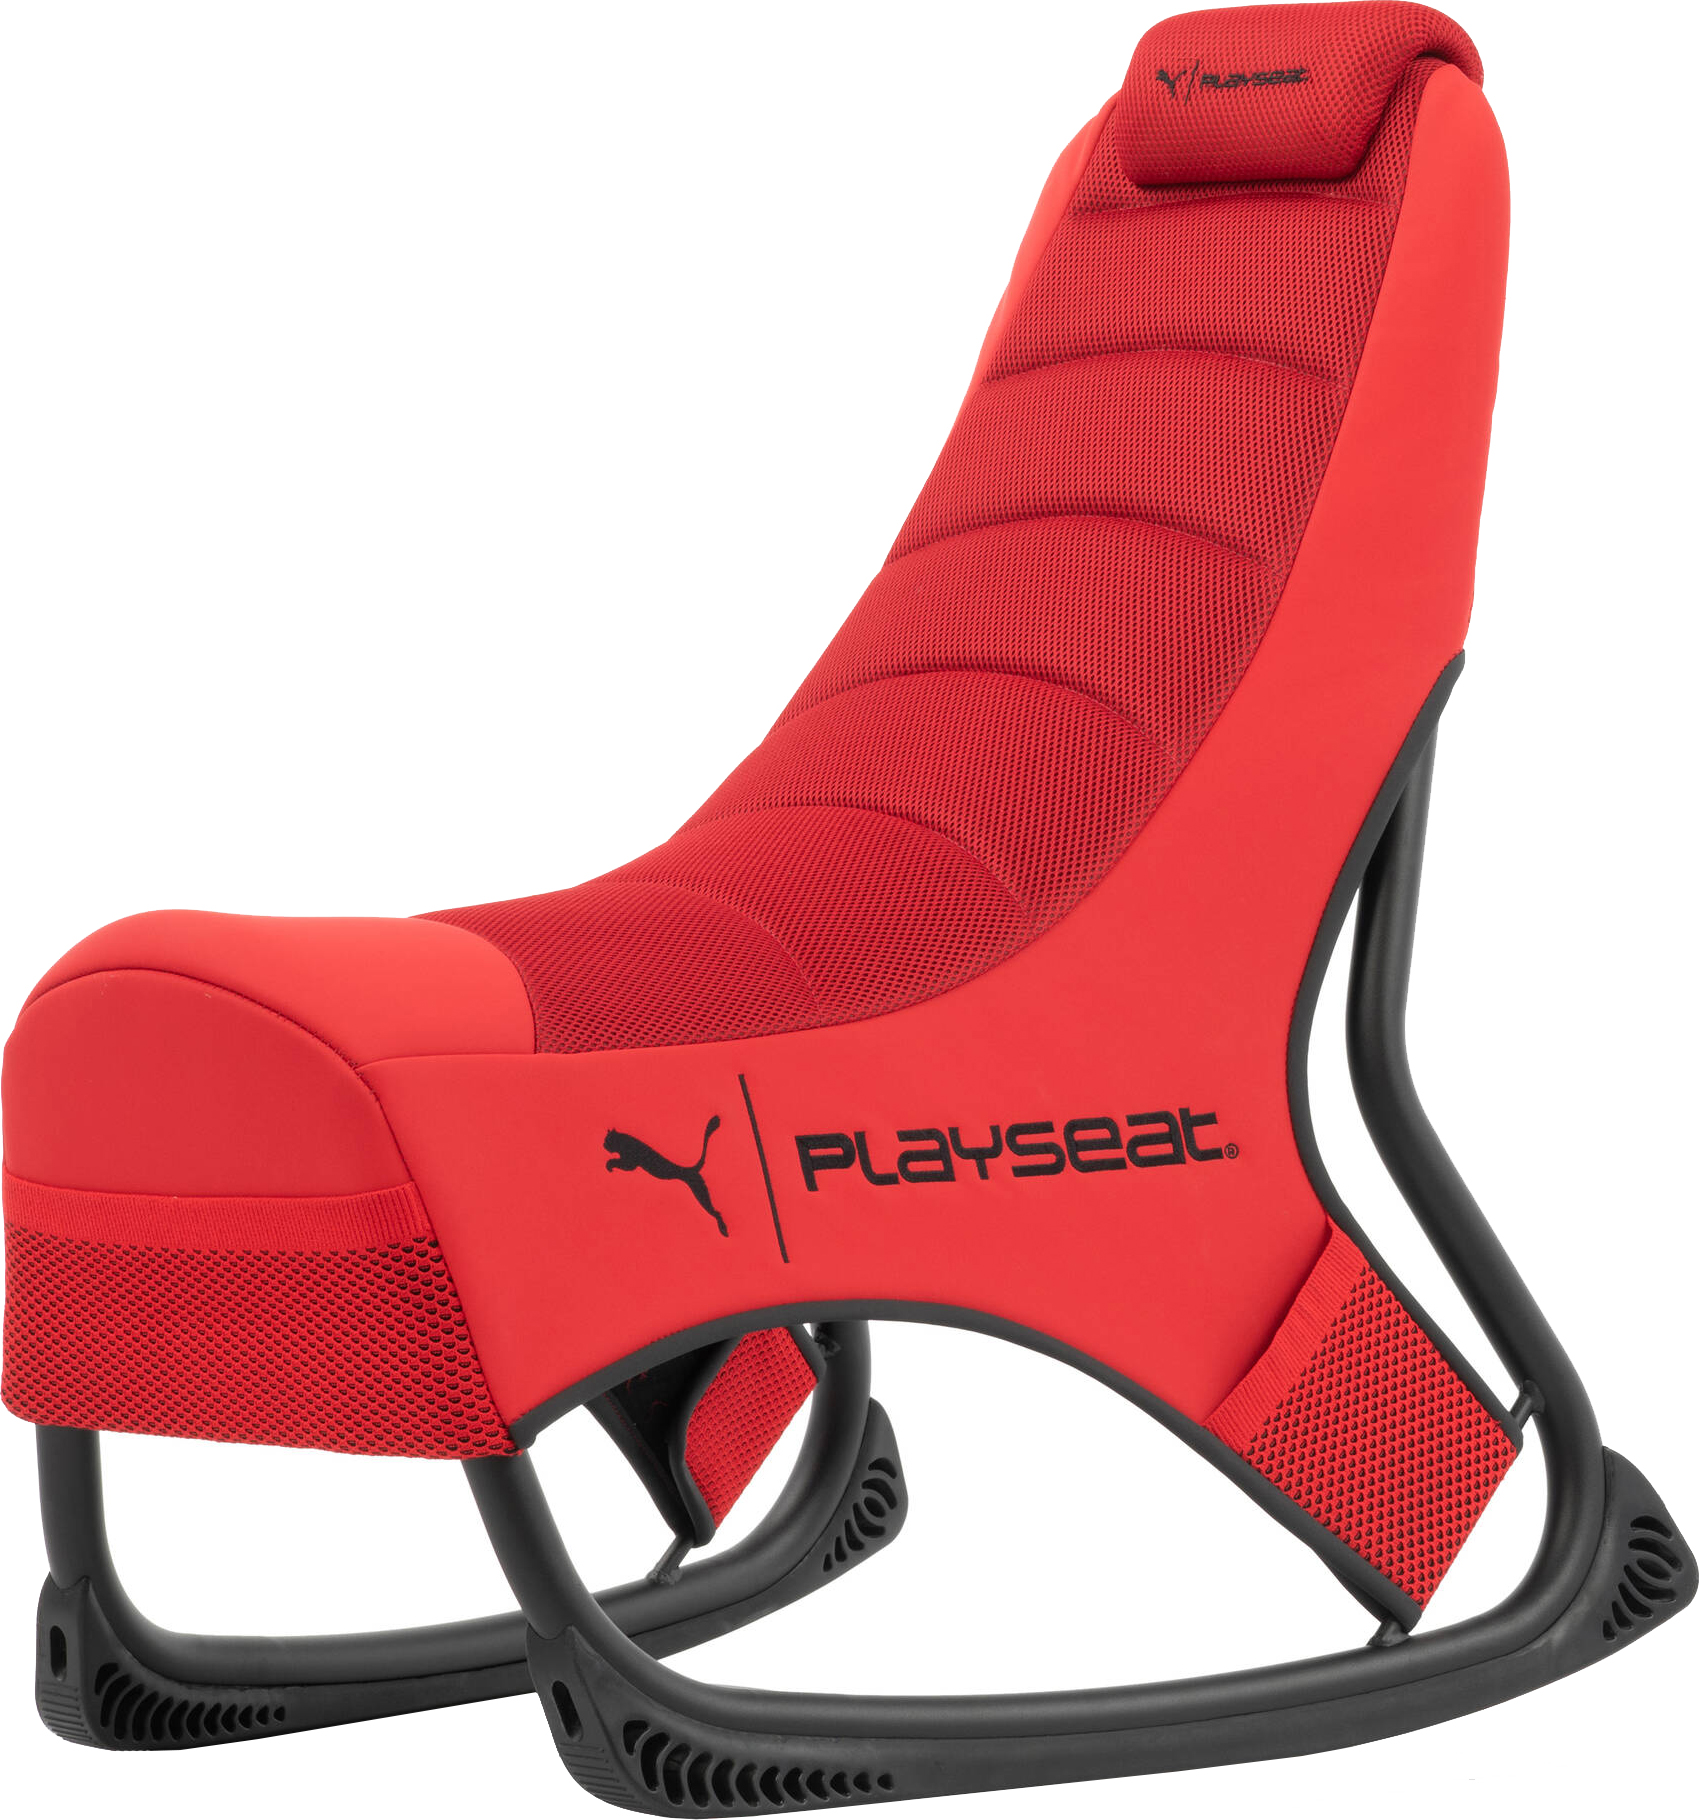 Игровое кресло PLAYSEAT Puma Edition Red (PPG.00230) в Киеве